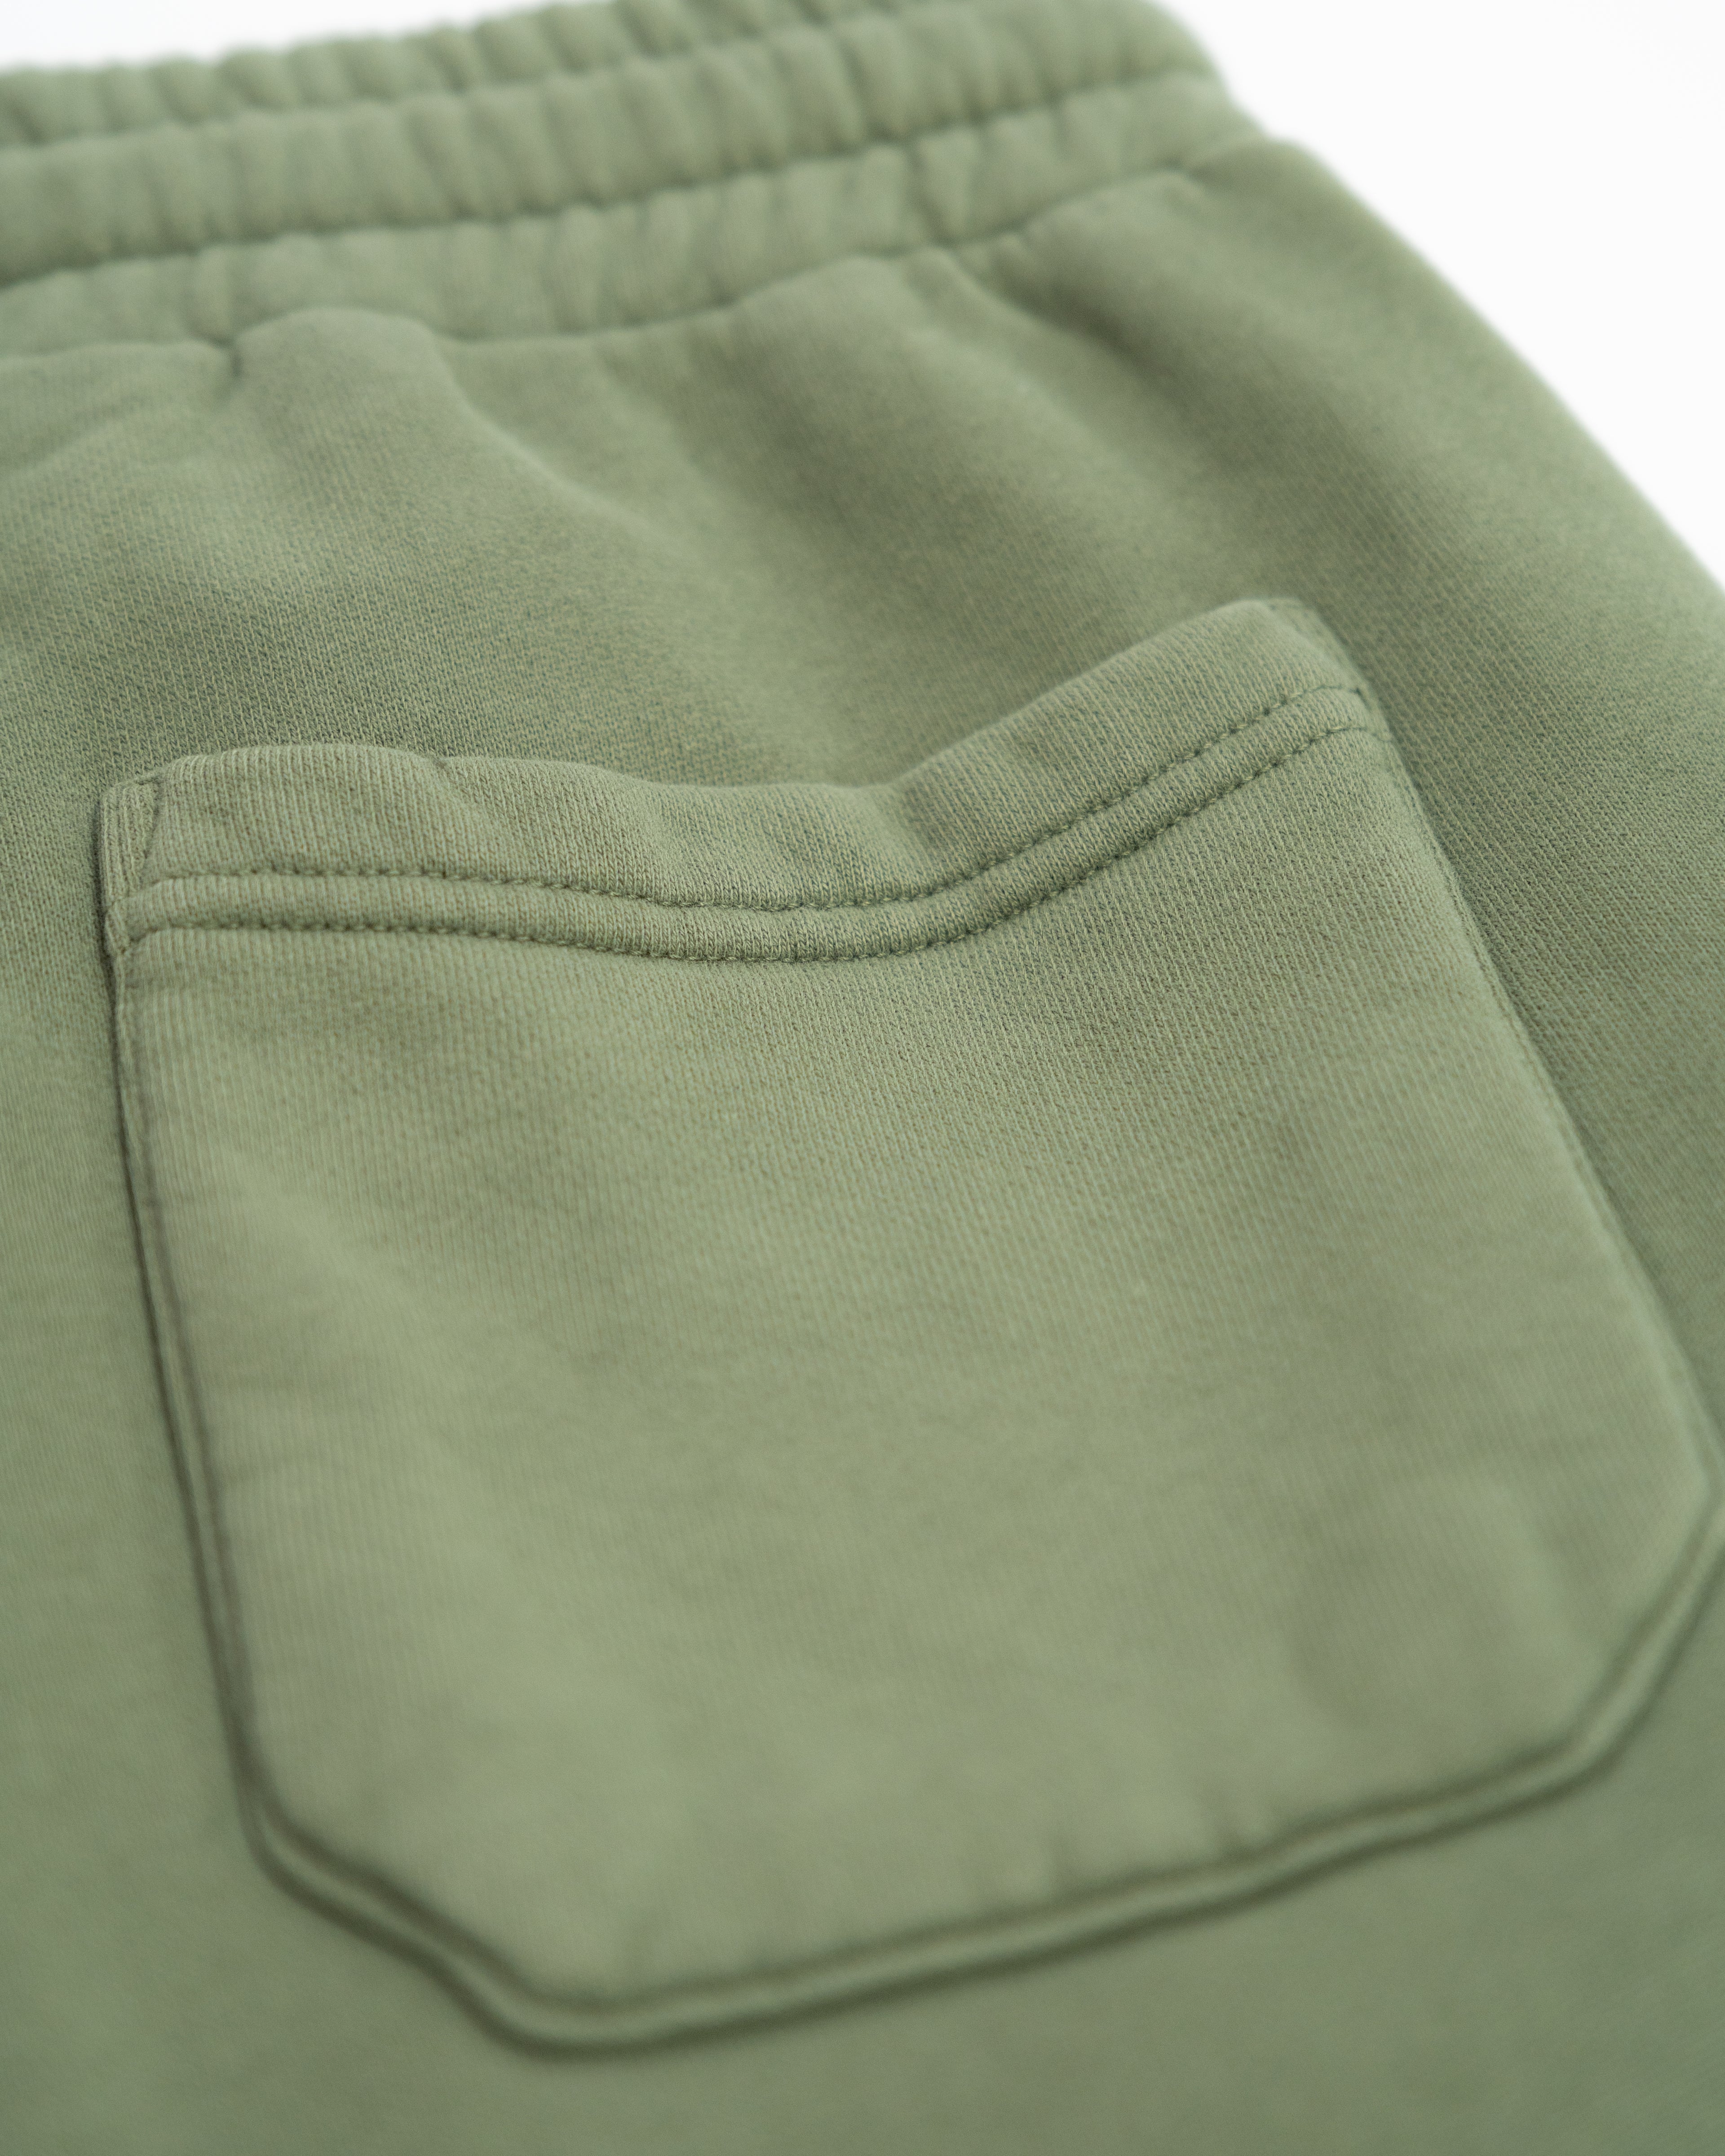 Premium - Sweatpants - Moos - Brushed